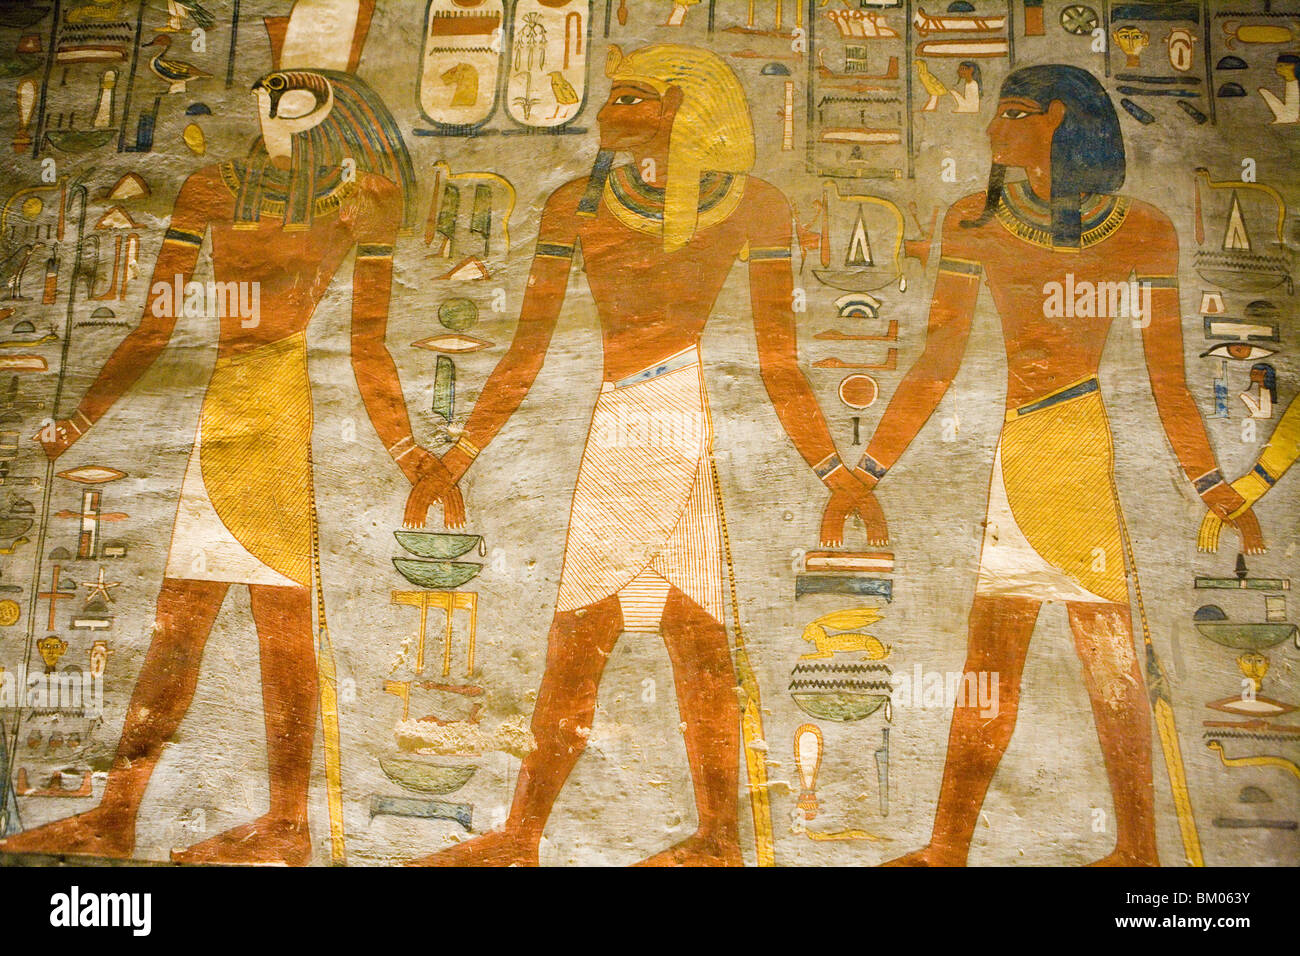 Geroglifici sulla parete della tomba, Valle dei Re, nei pressi di Luxor, Egitto Foto Stock